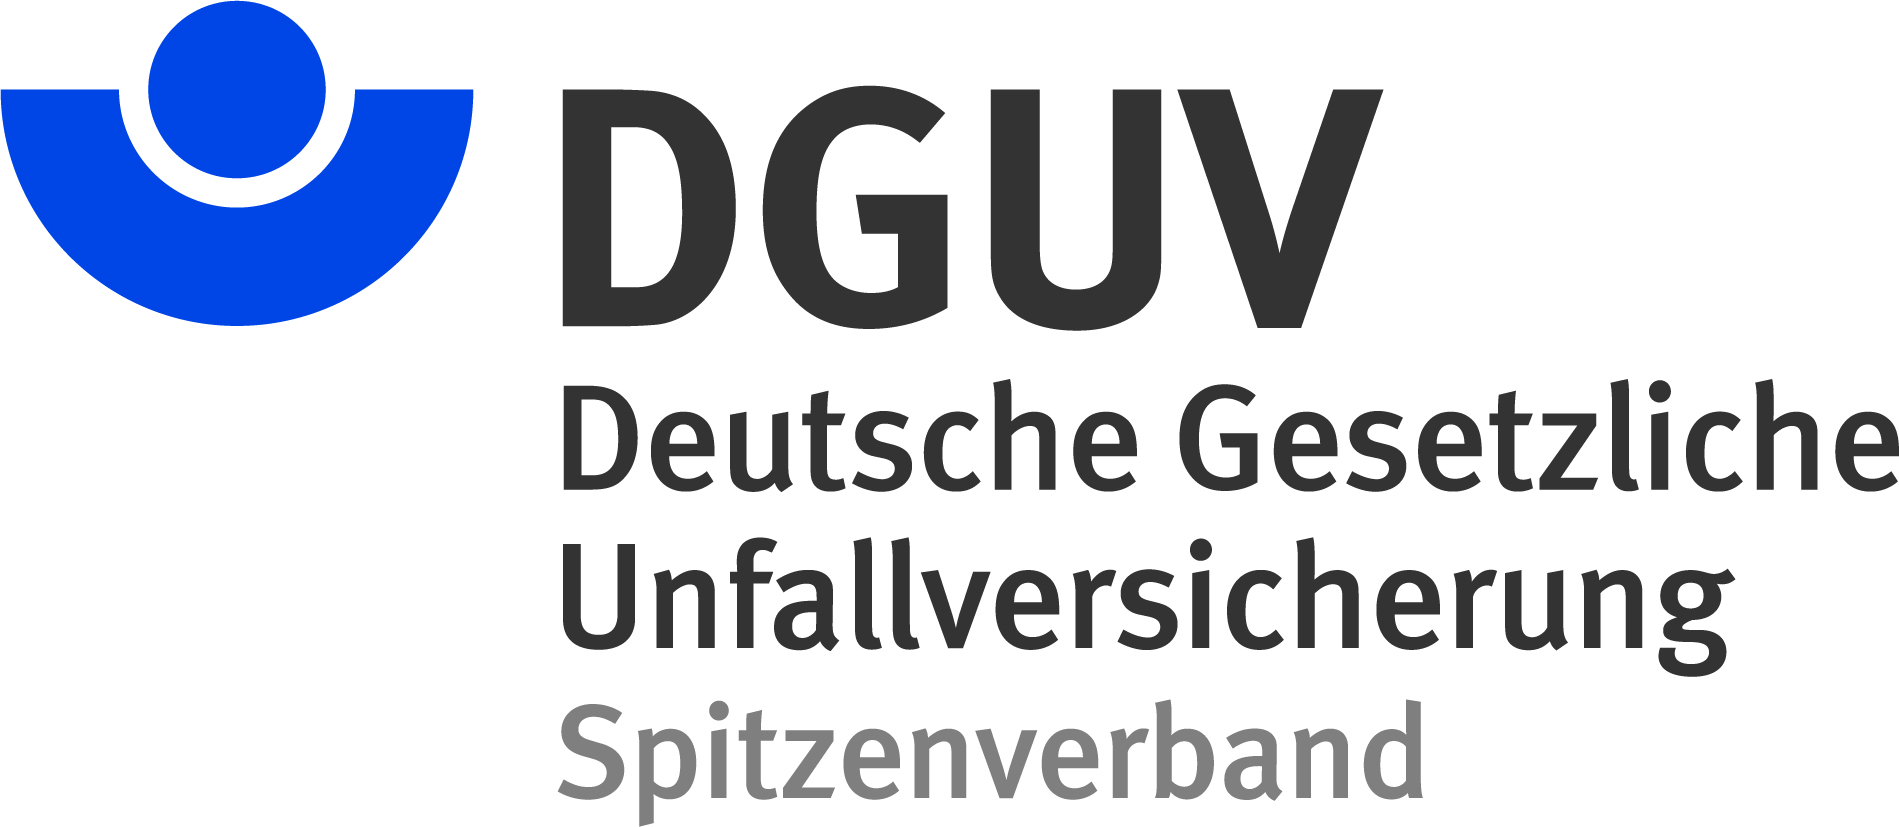 DGUV logo